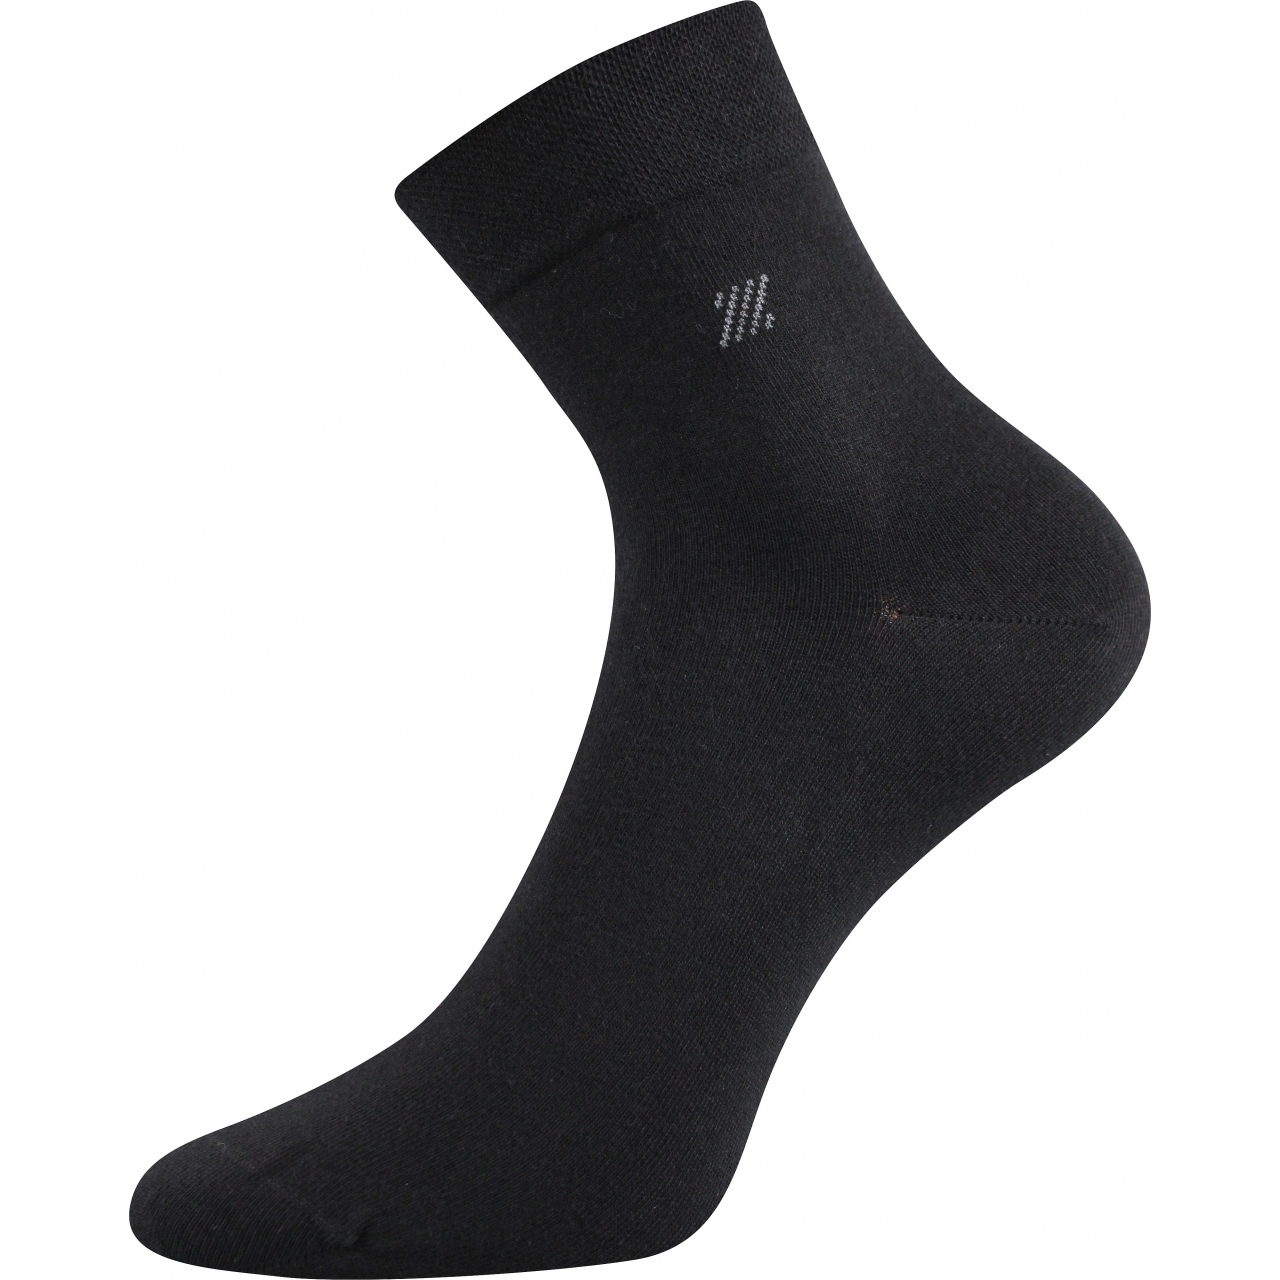 Ponožky pánské společenské Lonka Dion - černé, 43-46